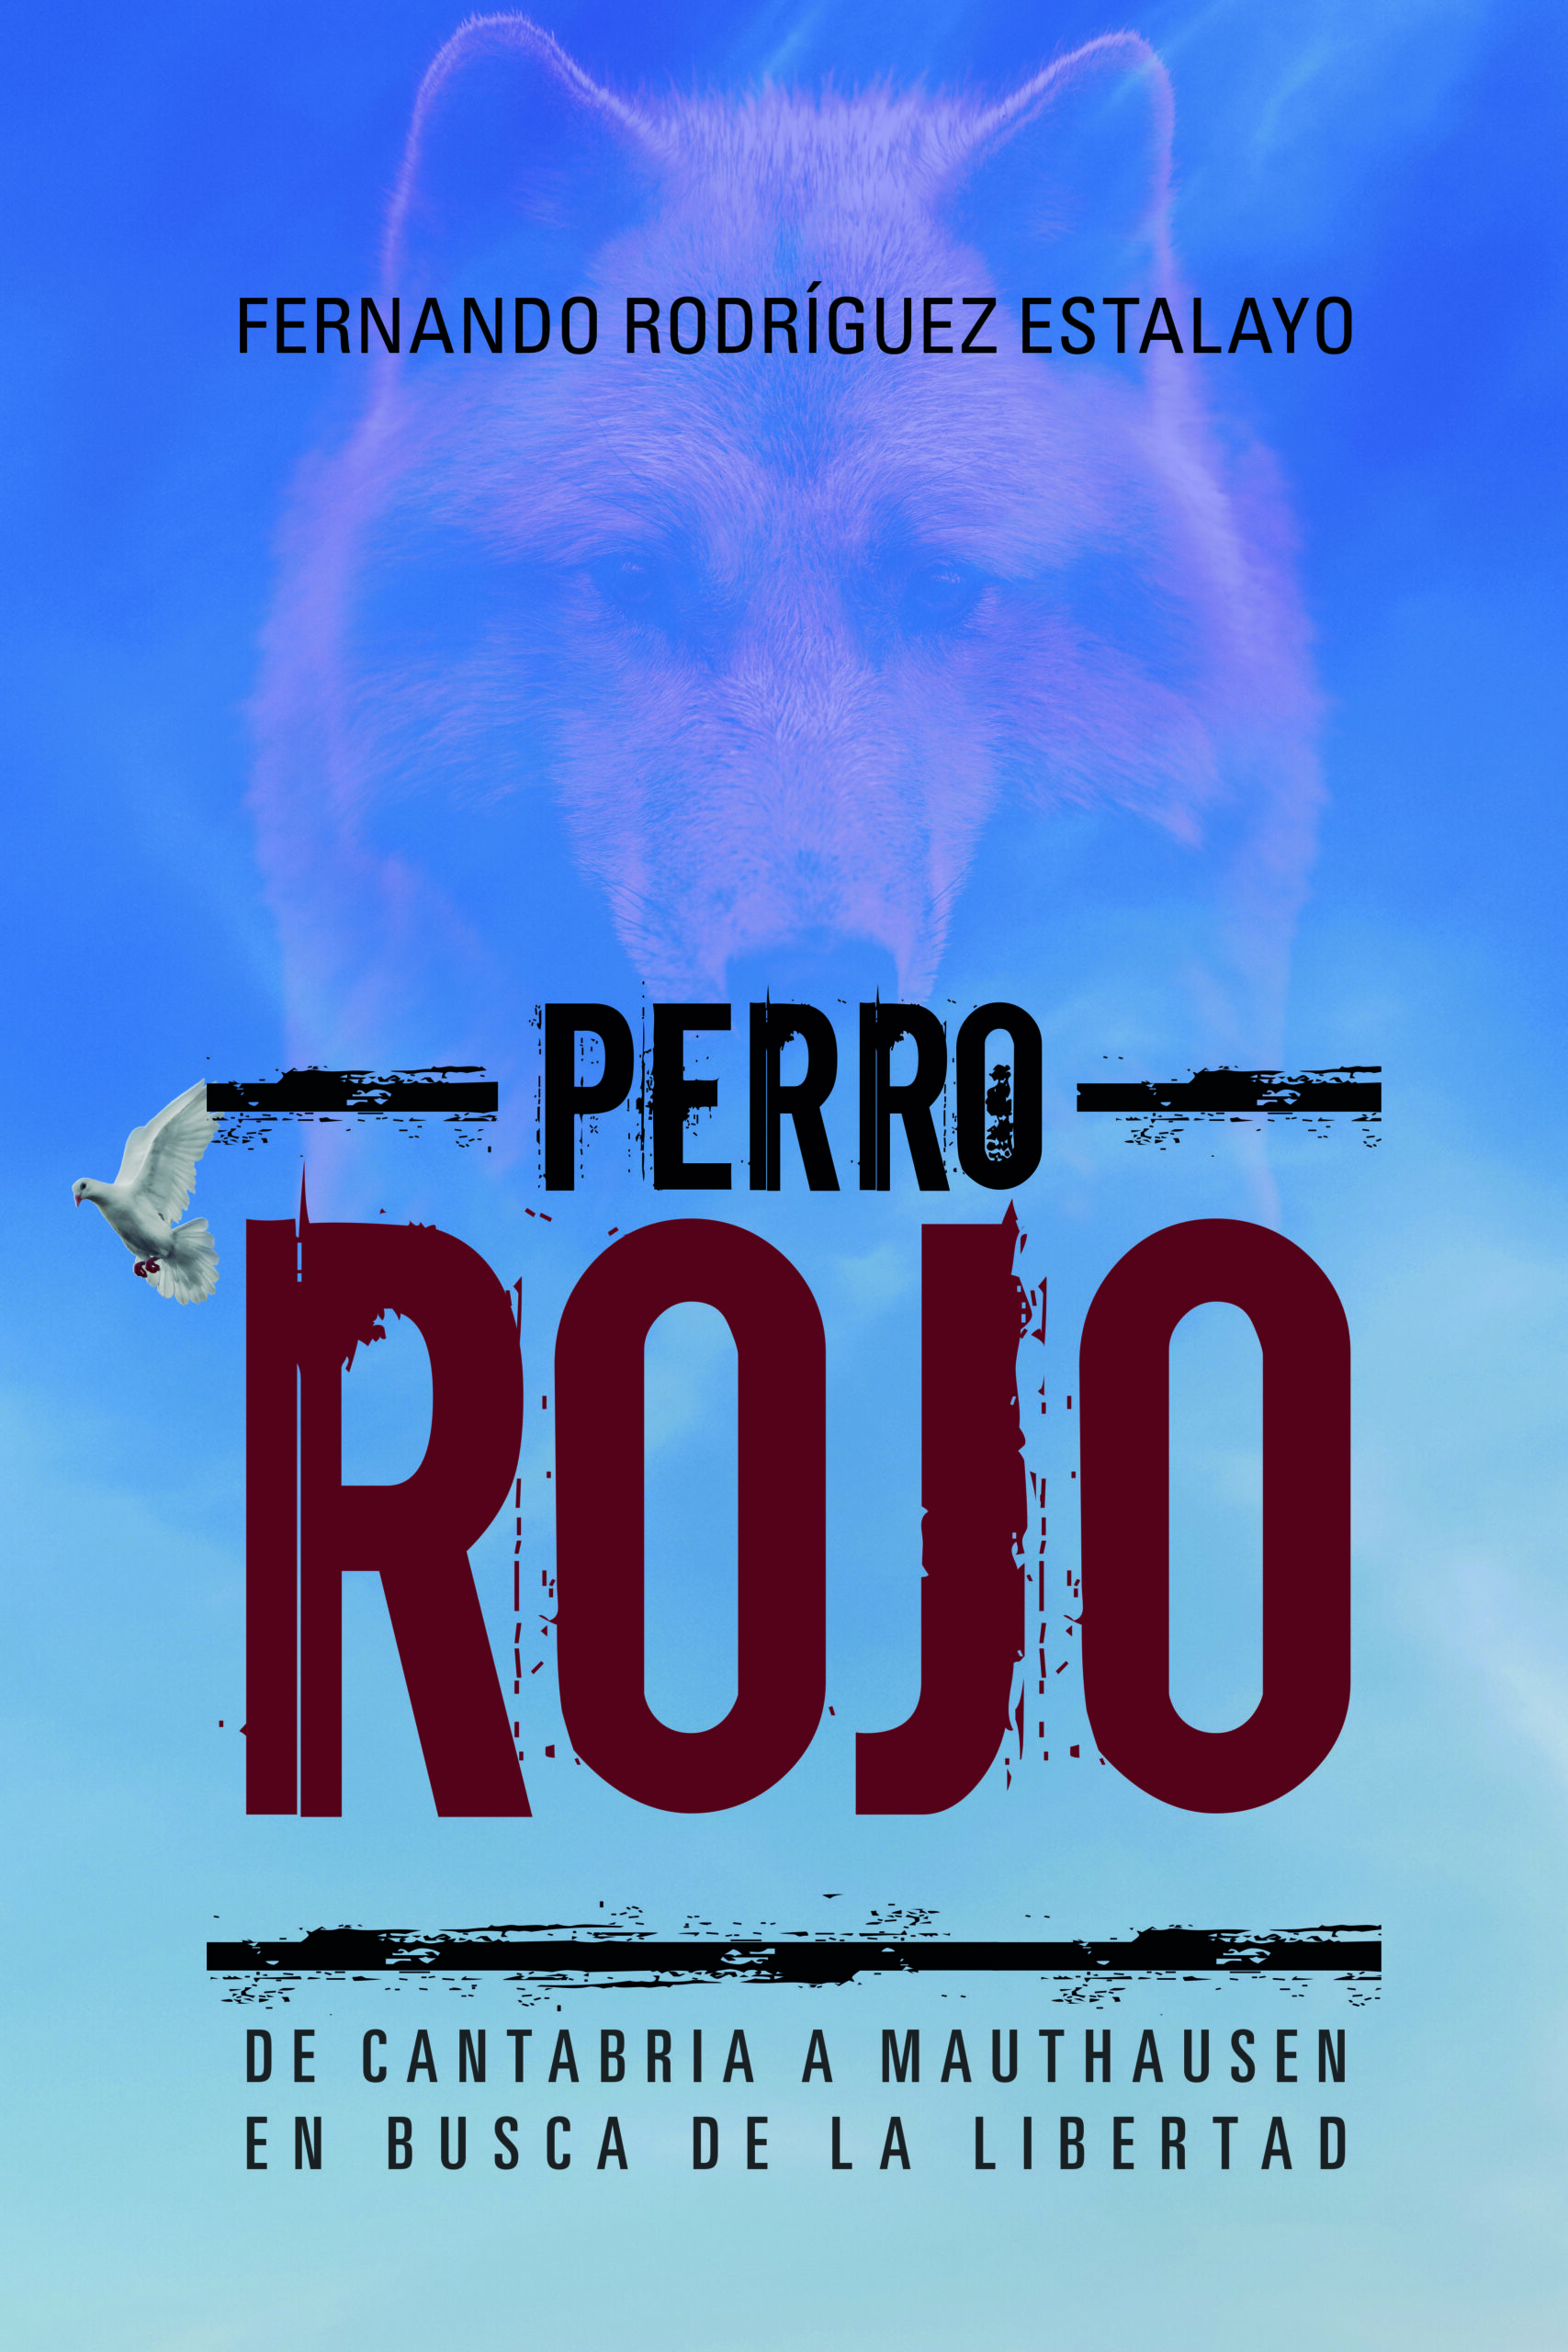 Perro rojo, de Fernando Rodríguez Estalayo